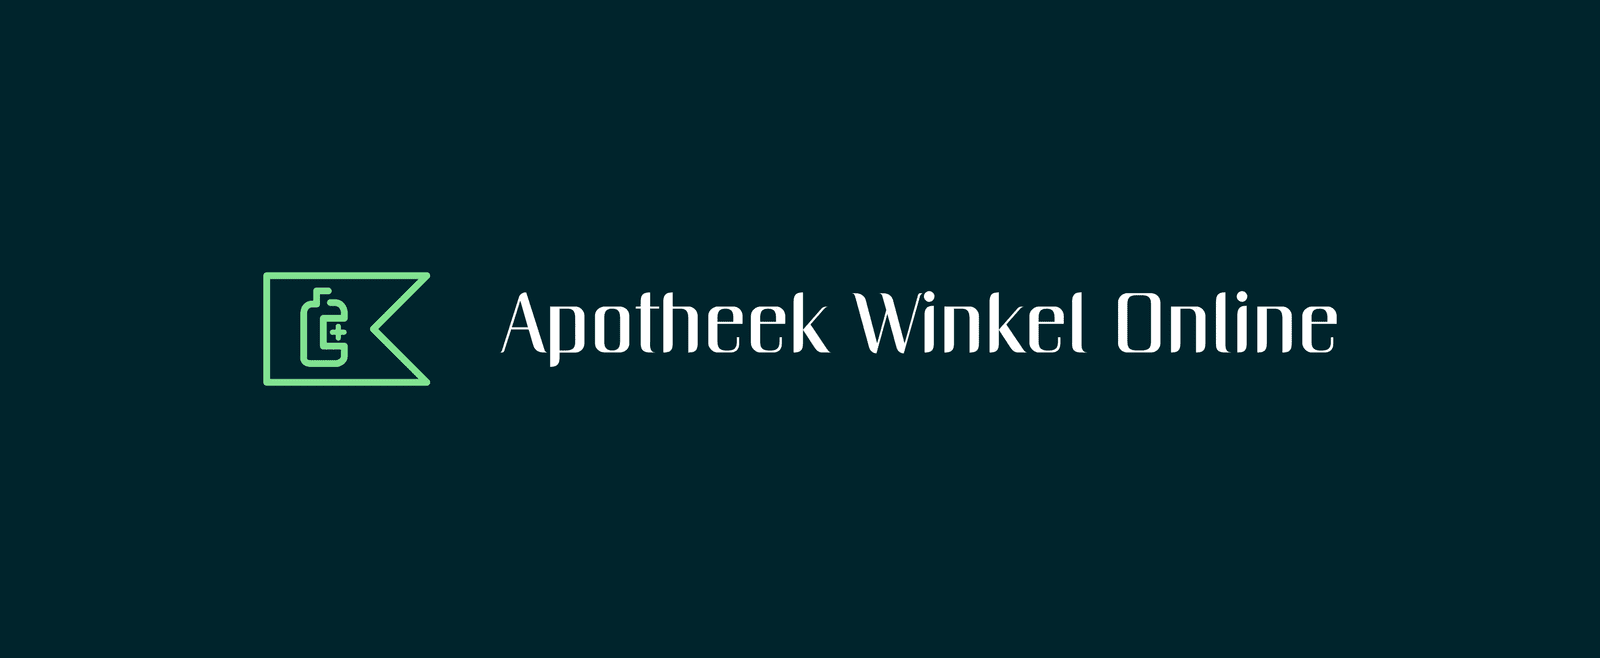 Apotheek Winkel Online